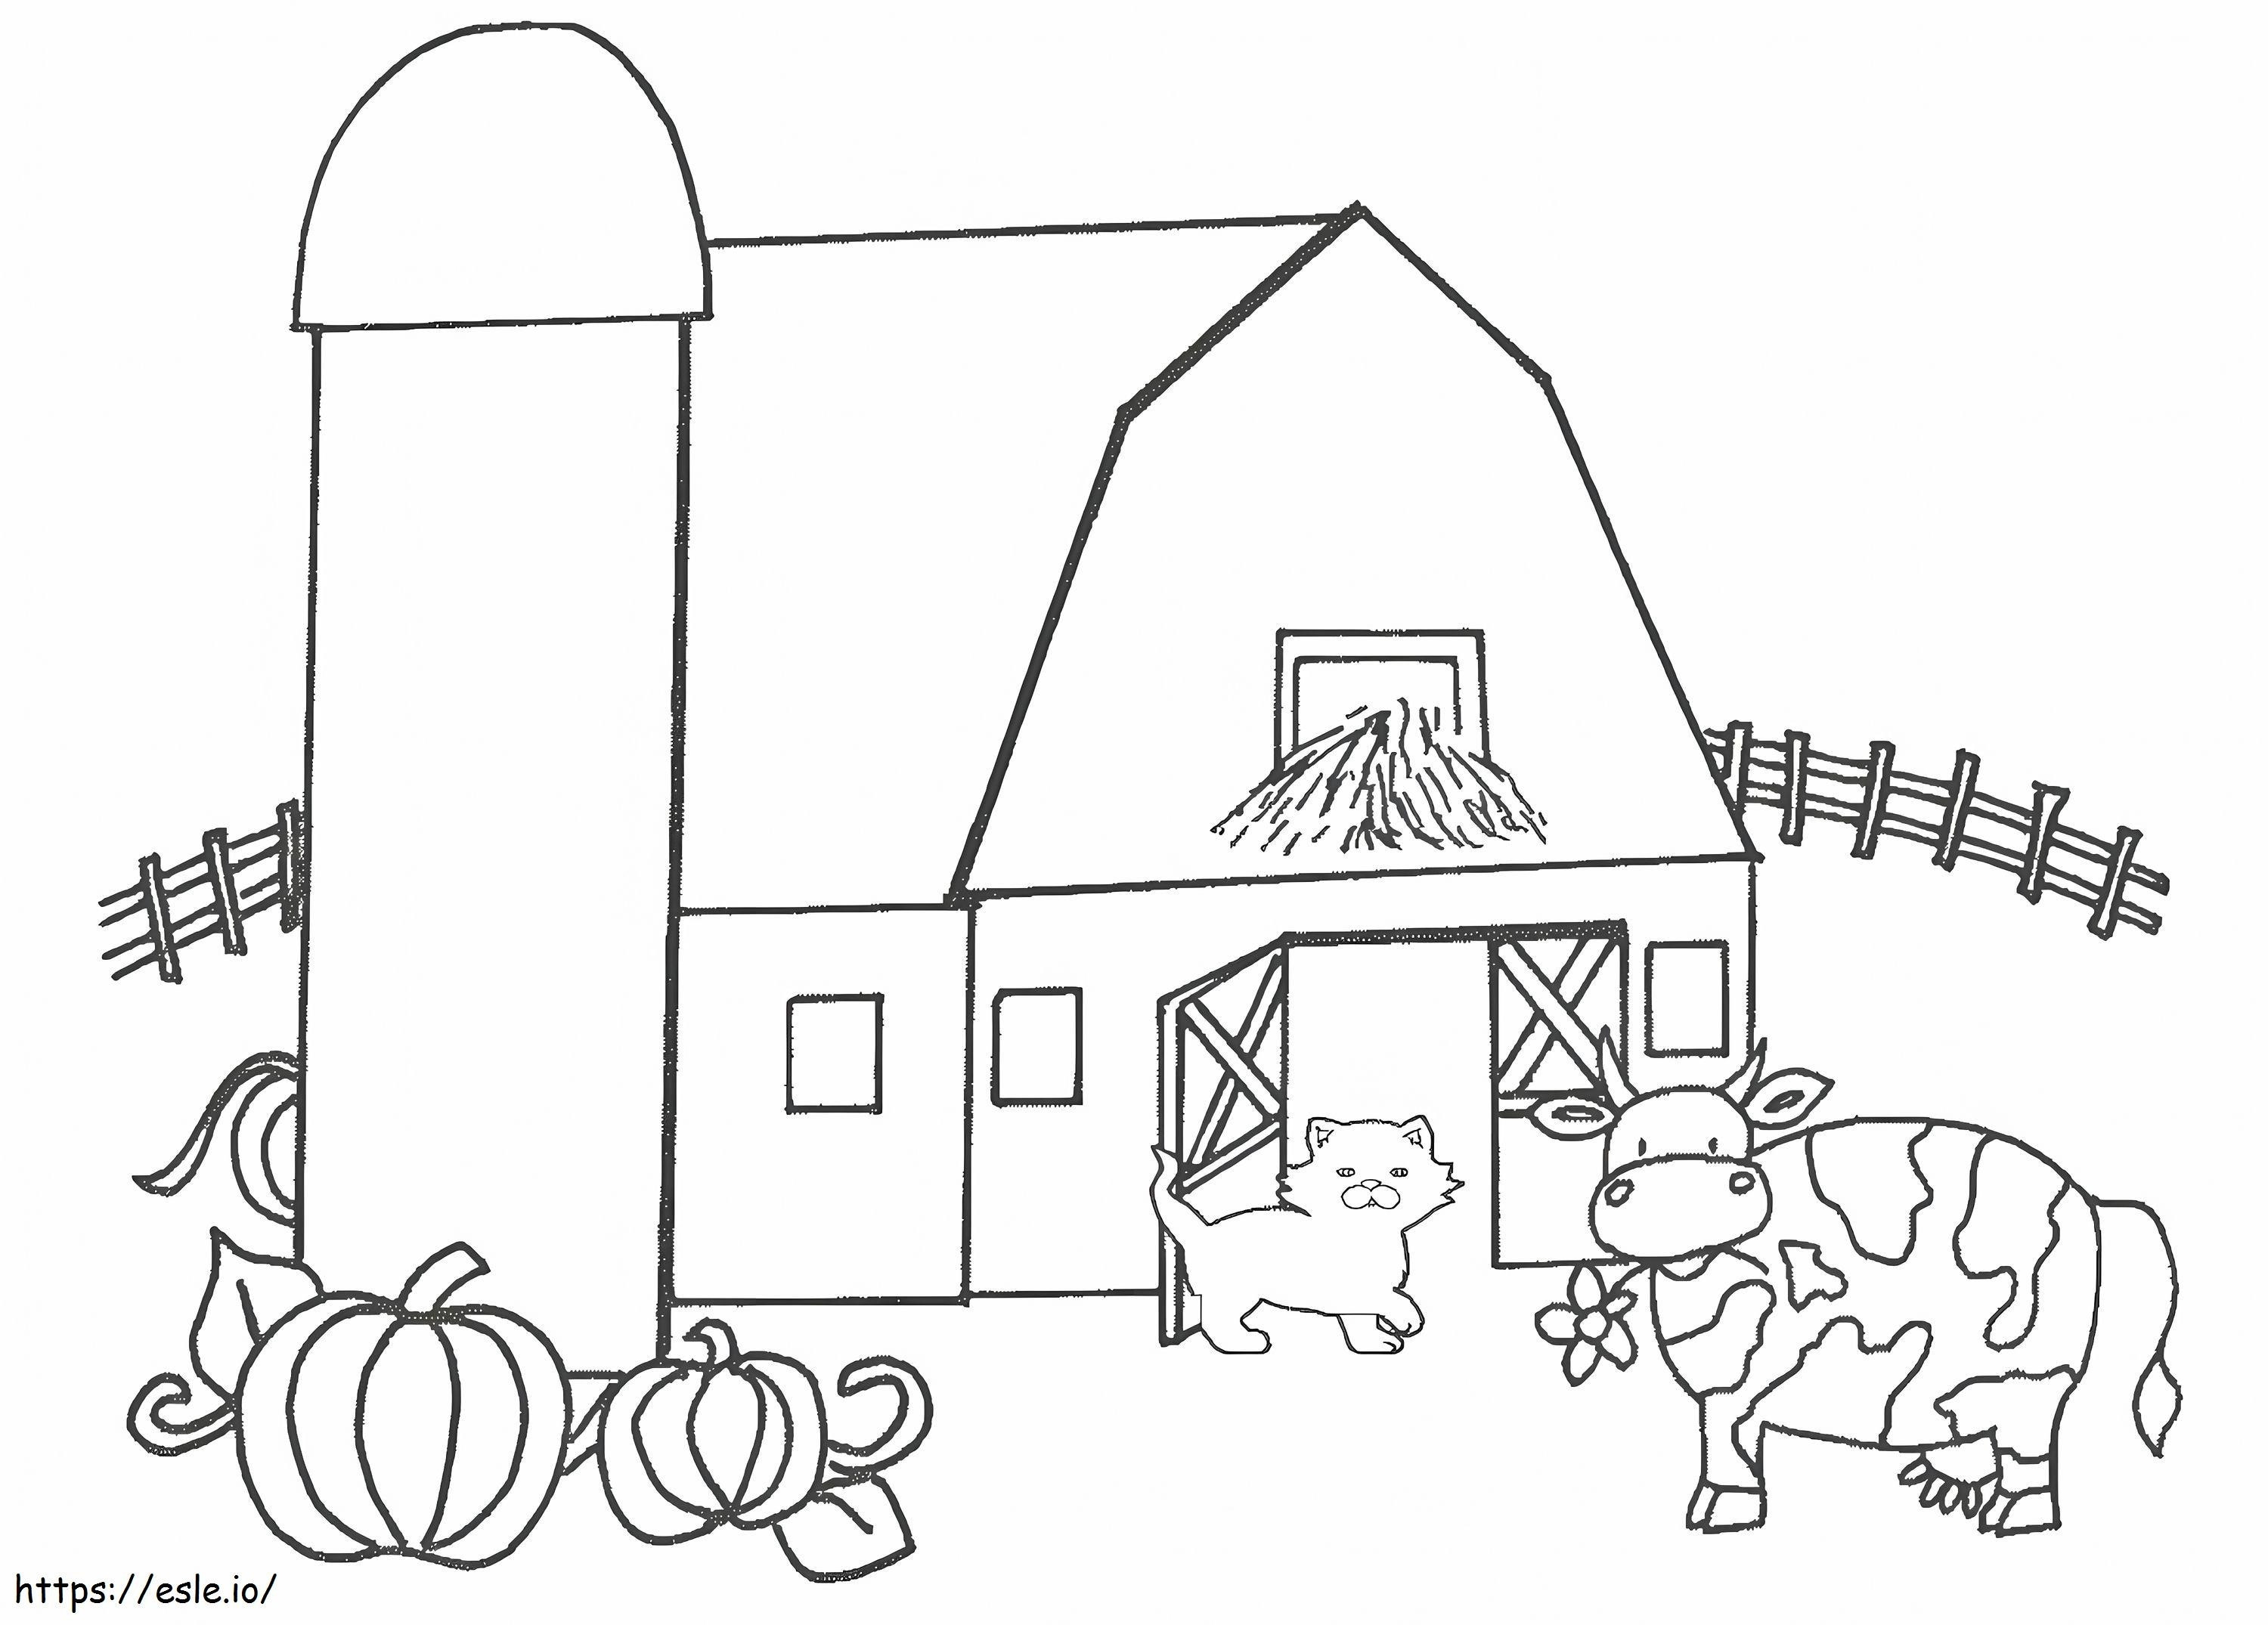 Gato y vaca en una granja para colorear